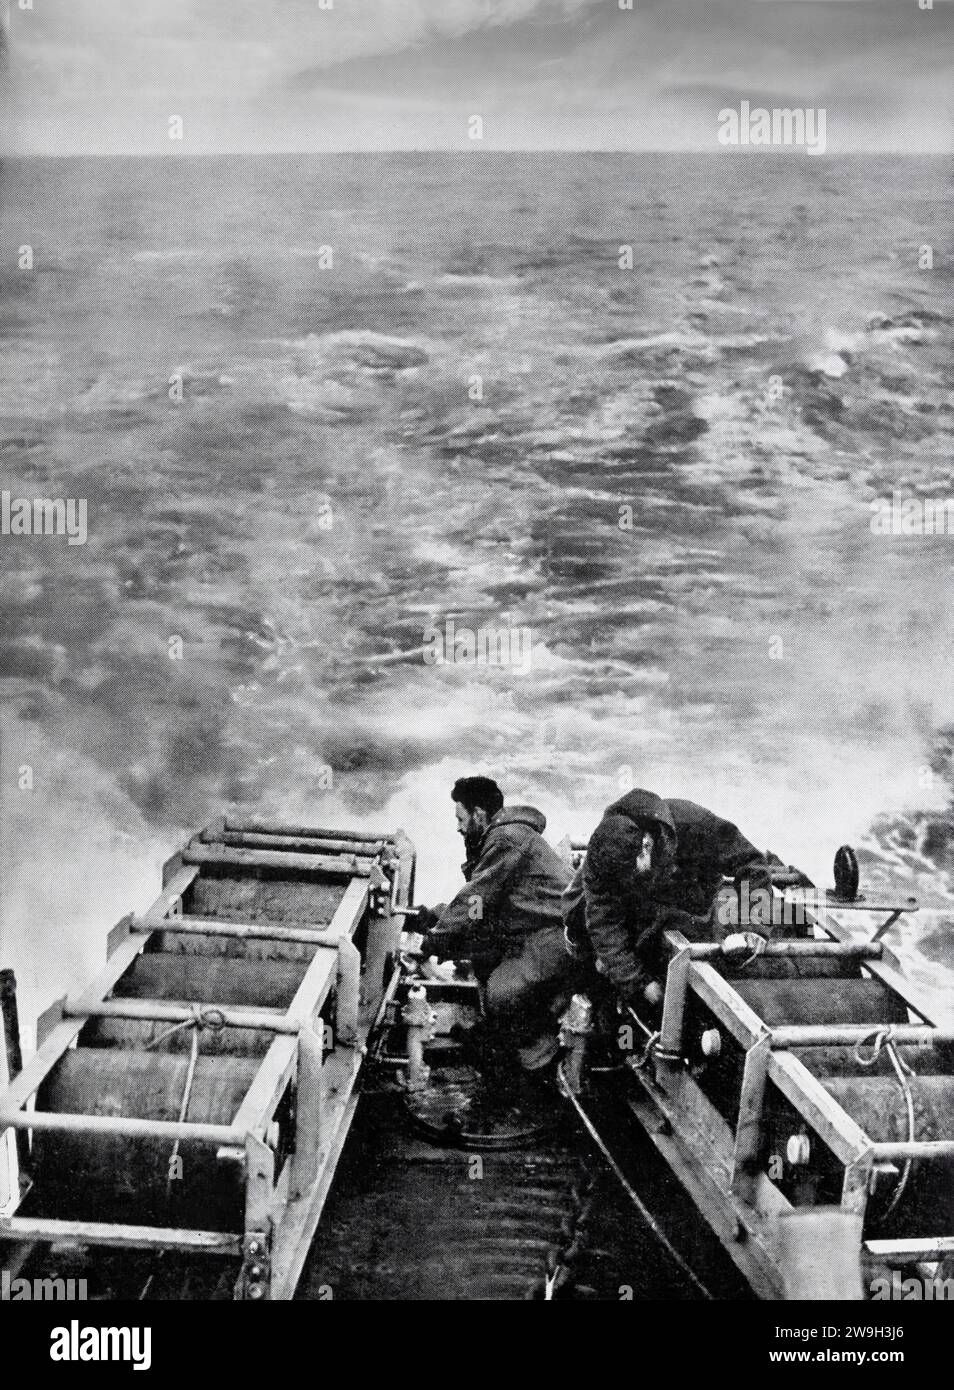 Equipaggio di un cacciatorpediniere alleato che si preparava a far cadere cariche di profondità per un cacciatorpediniere mentre scortava un convoglio Atlantico nel febbraio 1943. Facevano parte delle misure anti-sommergibile prese contro i branchi di U-Boot tedeschi durante la seconda guerra mondiale. Foto Stock